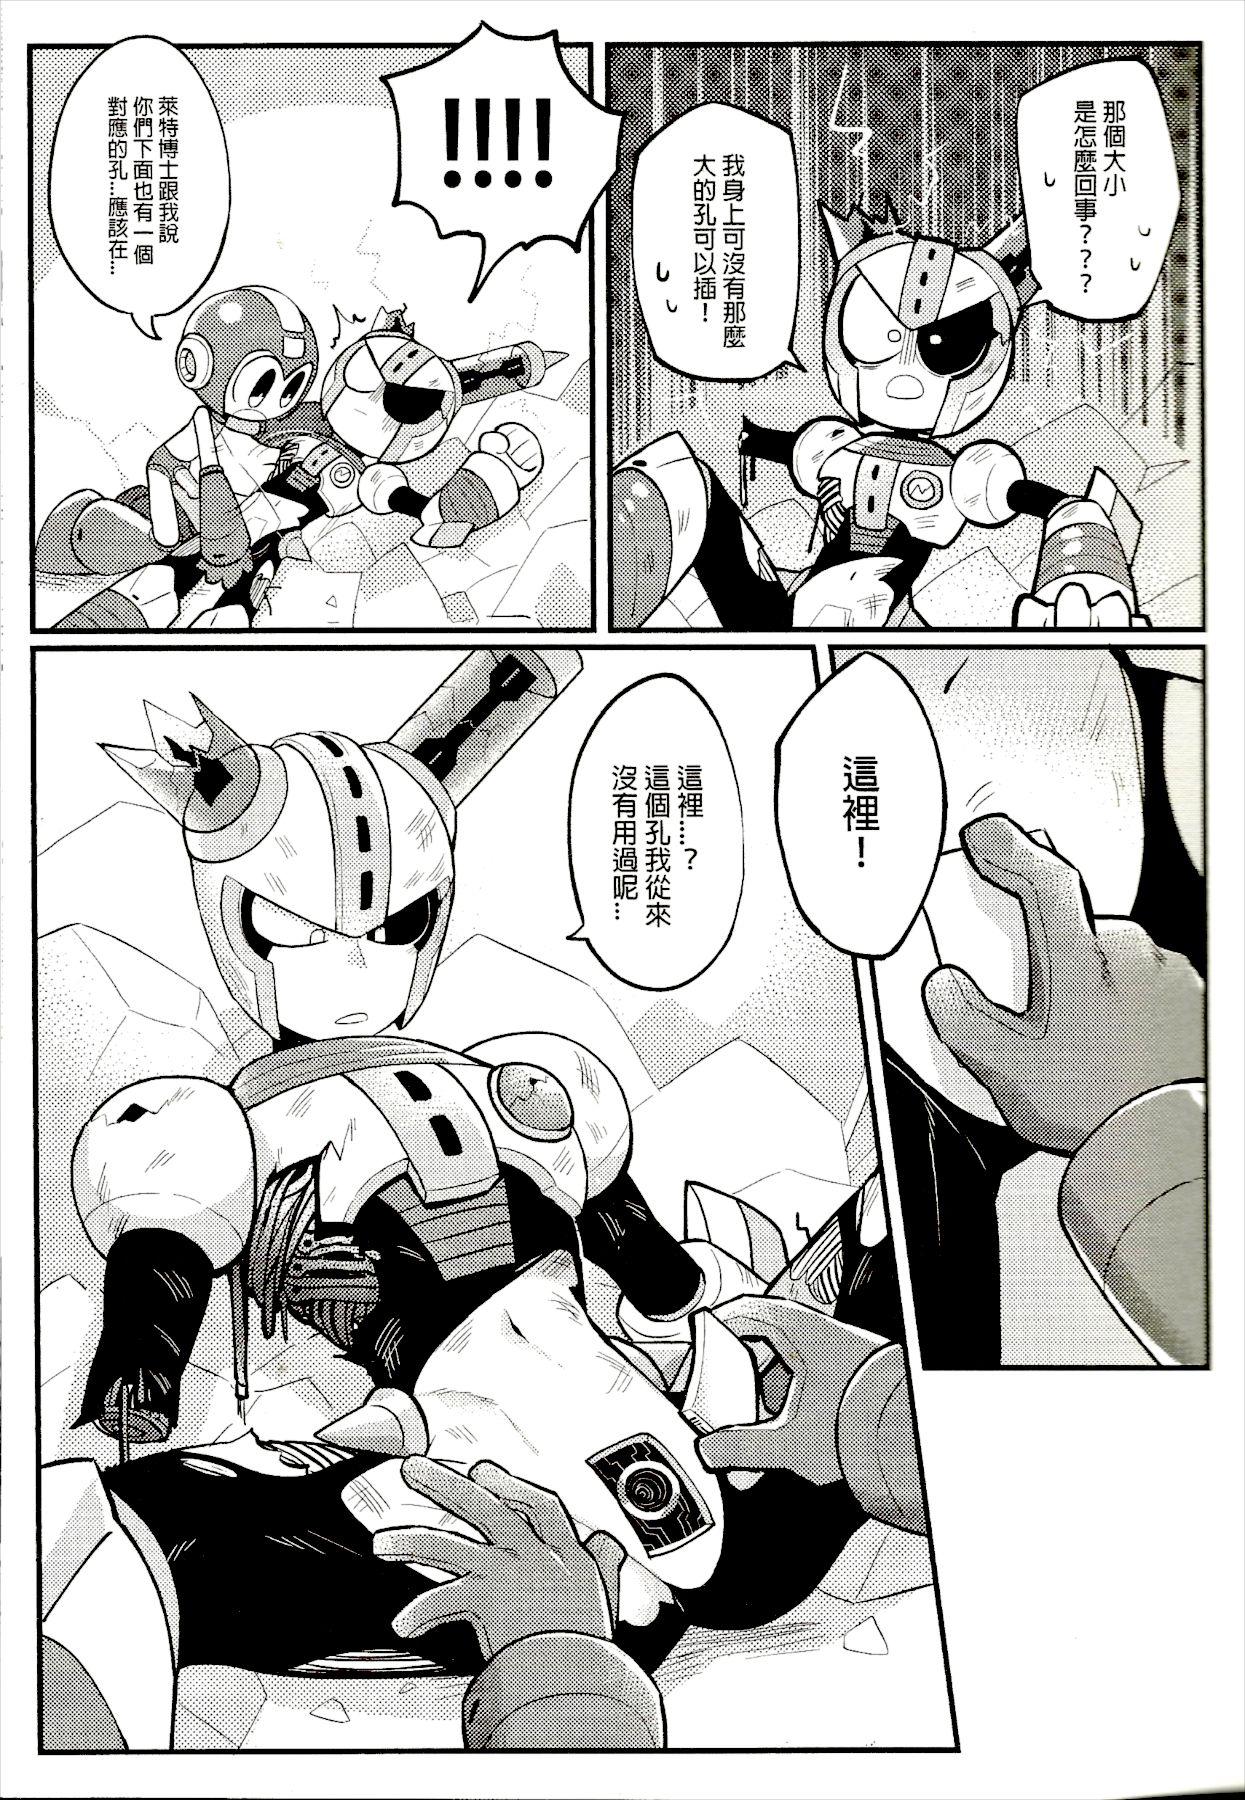 Sologirl (Finish Prison) Luòkè rén 11-FUSEMAN gōnglüè běn | "Rockman 11-FUSEMAN Raiders" (Mega Man) - Megaman Step - Page 10